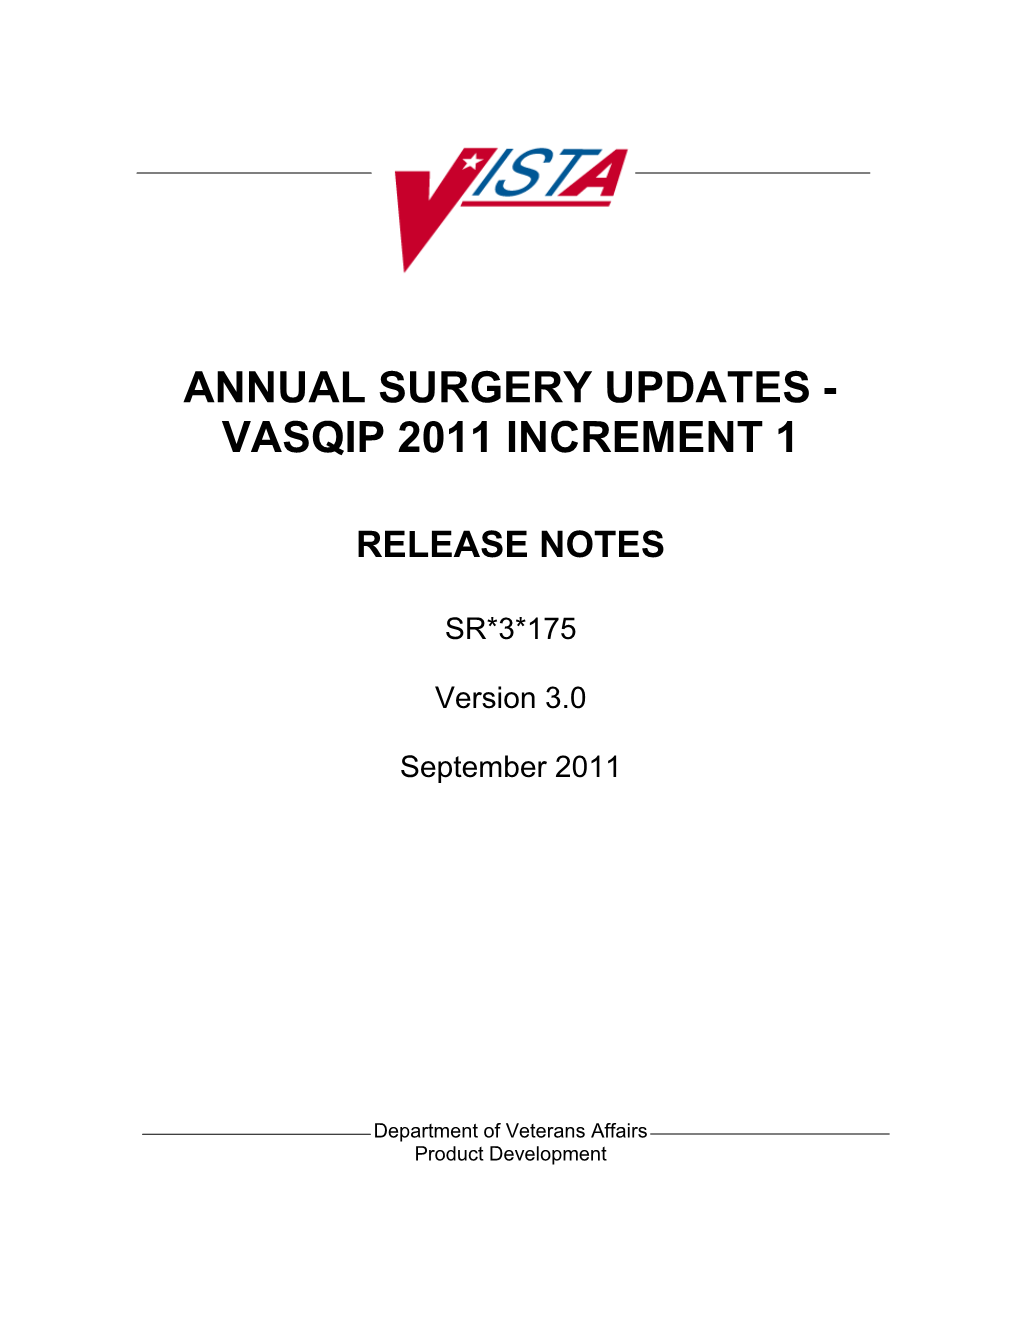 Annualsurgery UPDATES - VASQIP 2011 Increment 1